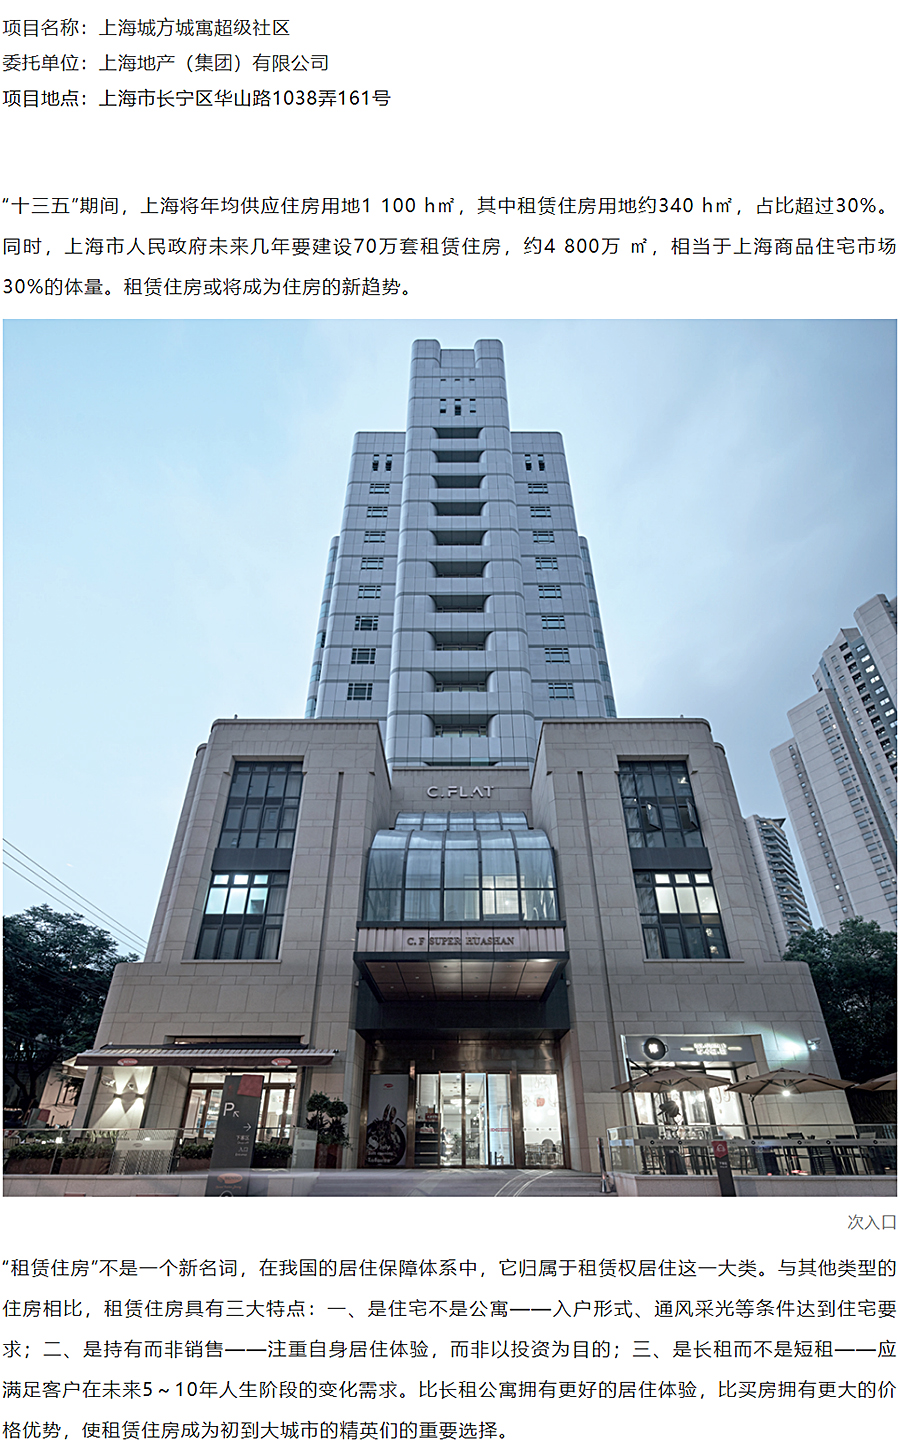 上海地产-_-城方城寓超级社区华山路店_0001_图层-2.jpg